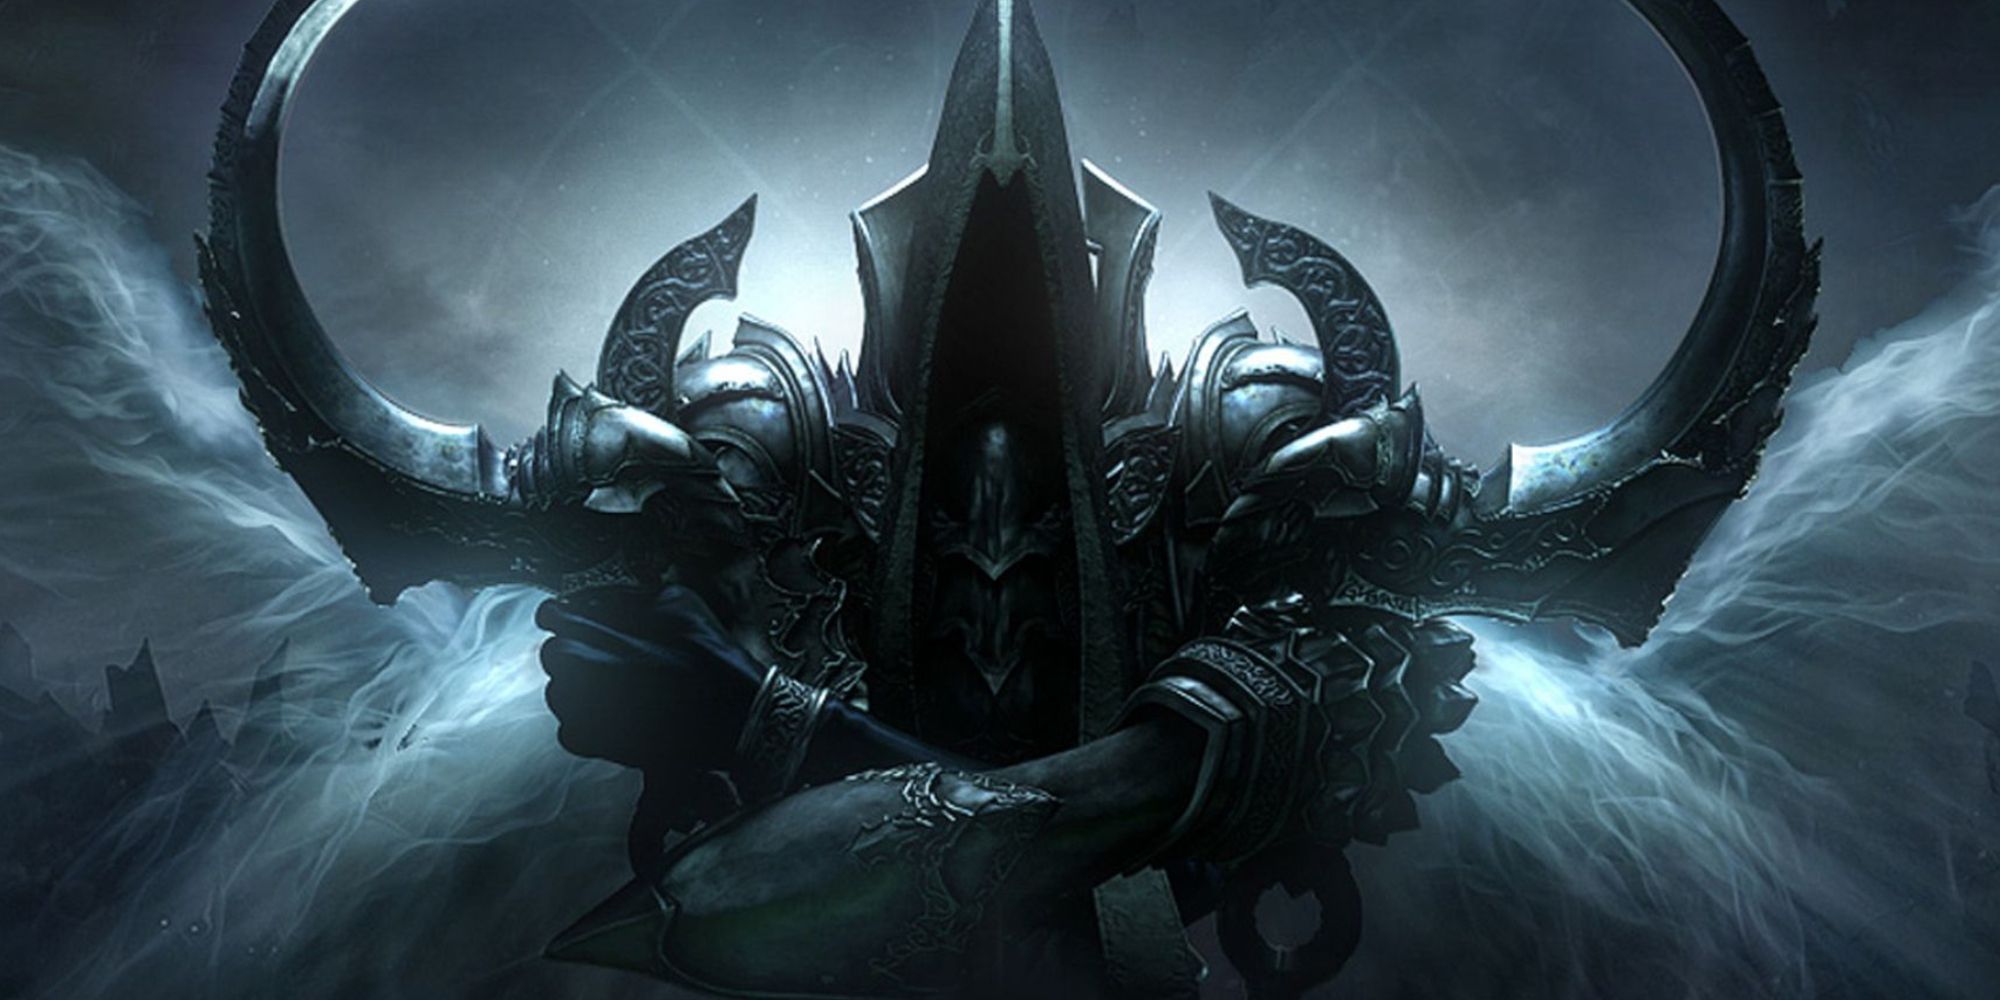 Diablo 3 reaper-like character holding scythe